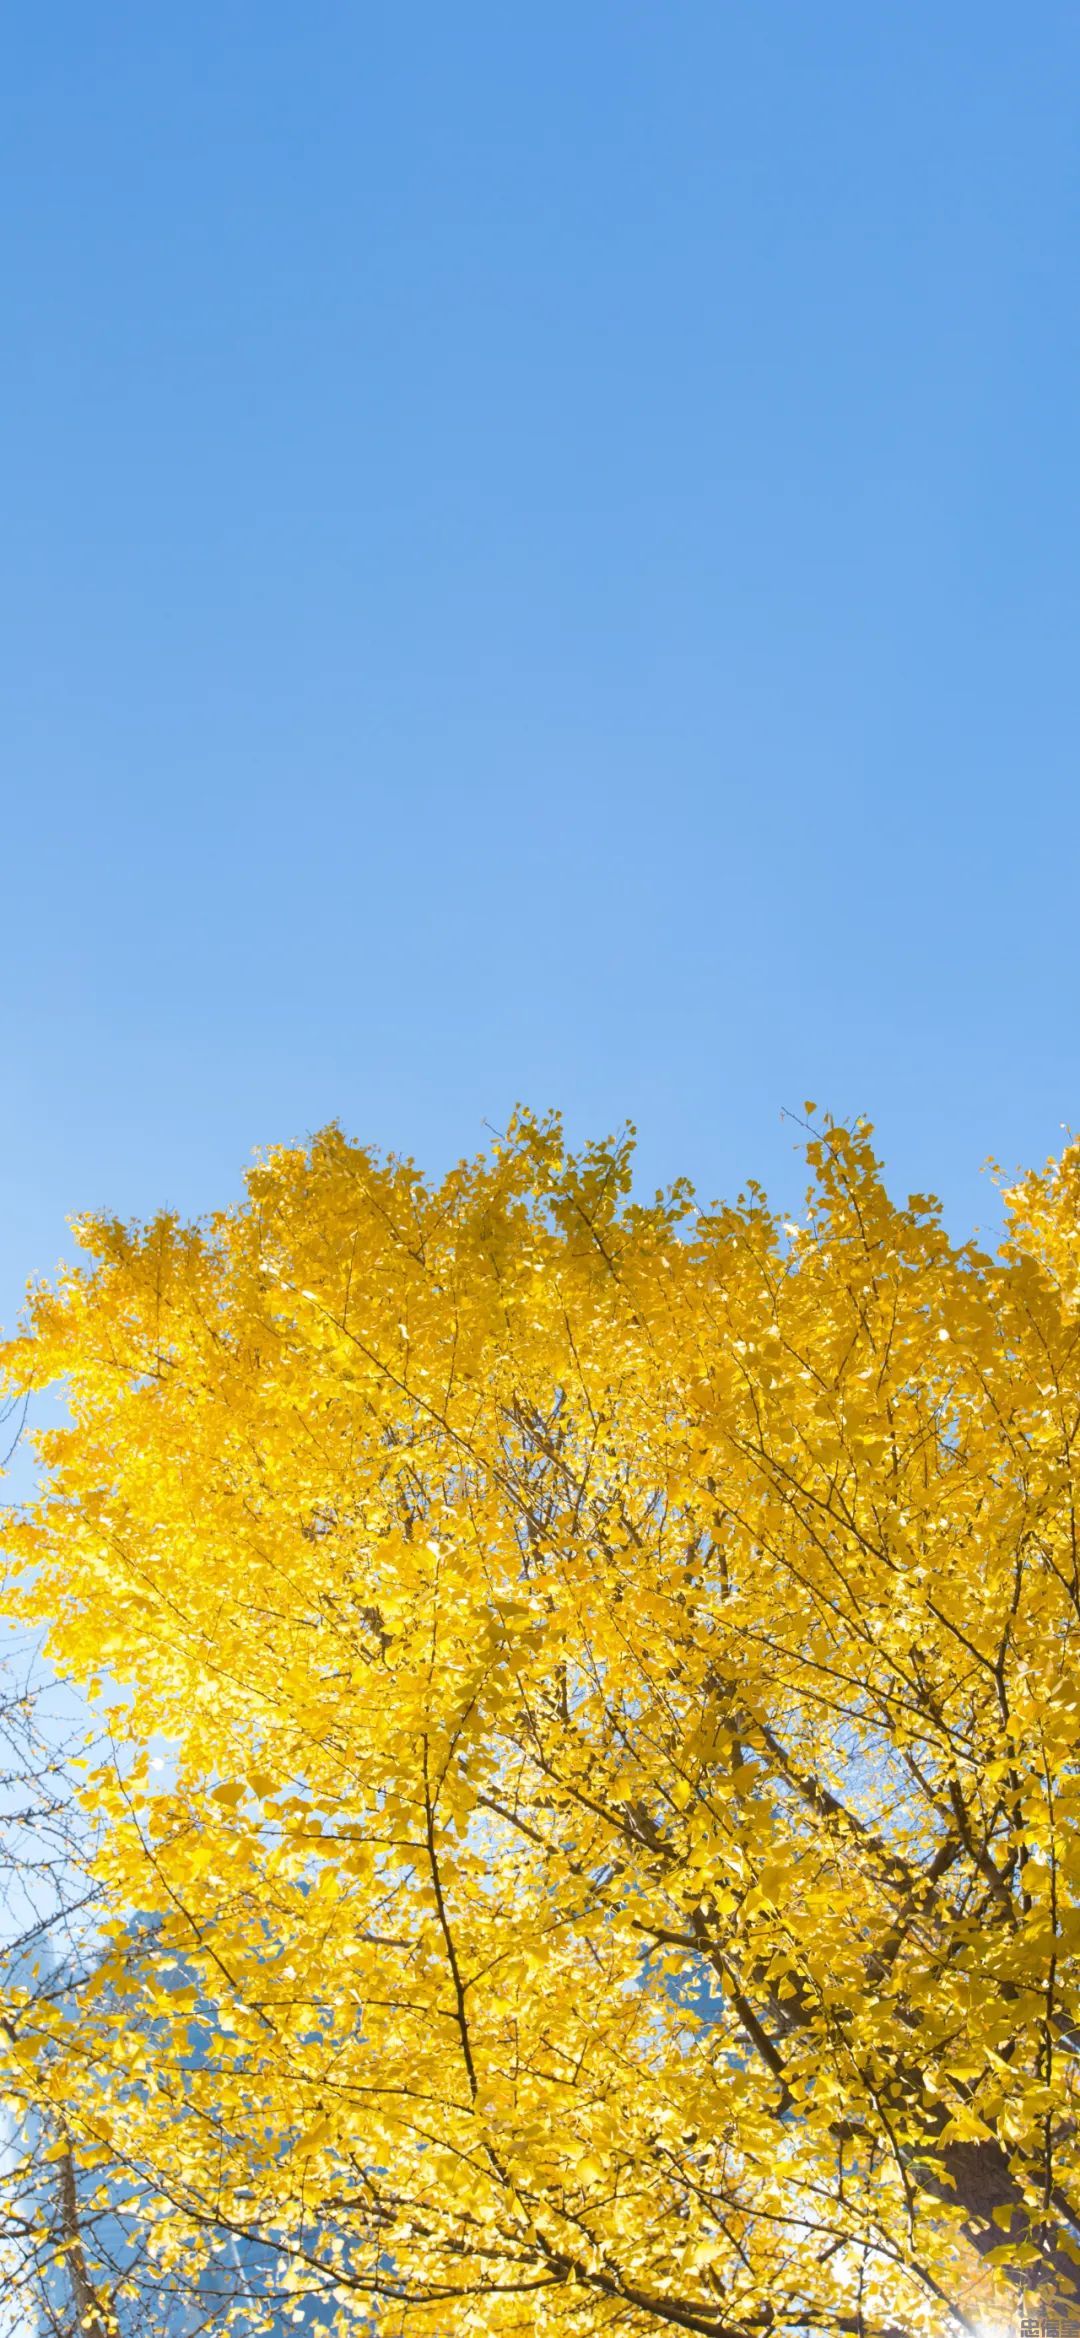 金黄色的秋天风景手机壁纸高清竖屏图片大全集(图7)